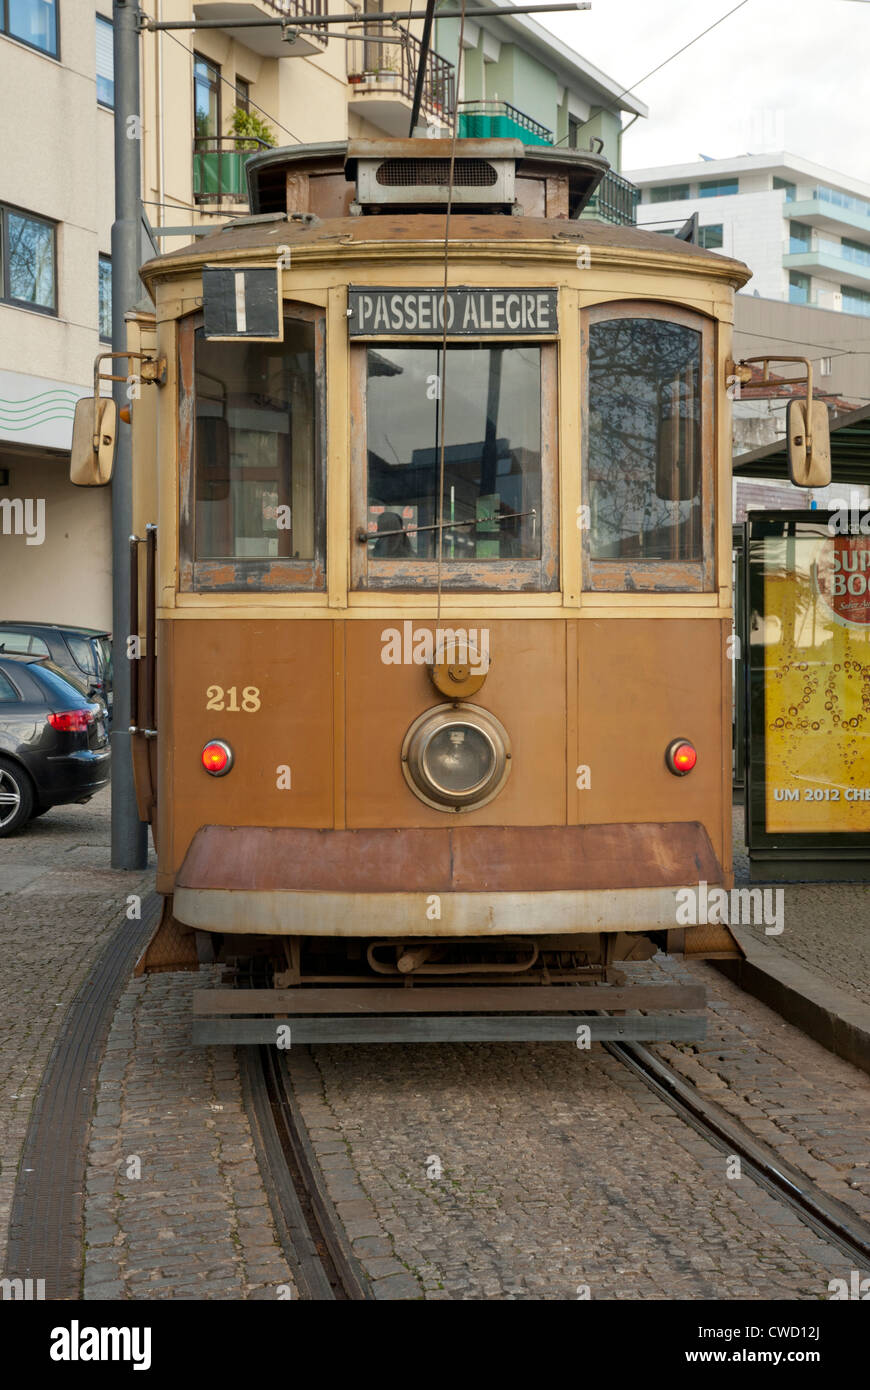 Tram in Oporto (Porto), Portugal Stock Photo